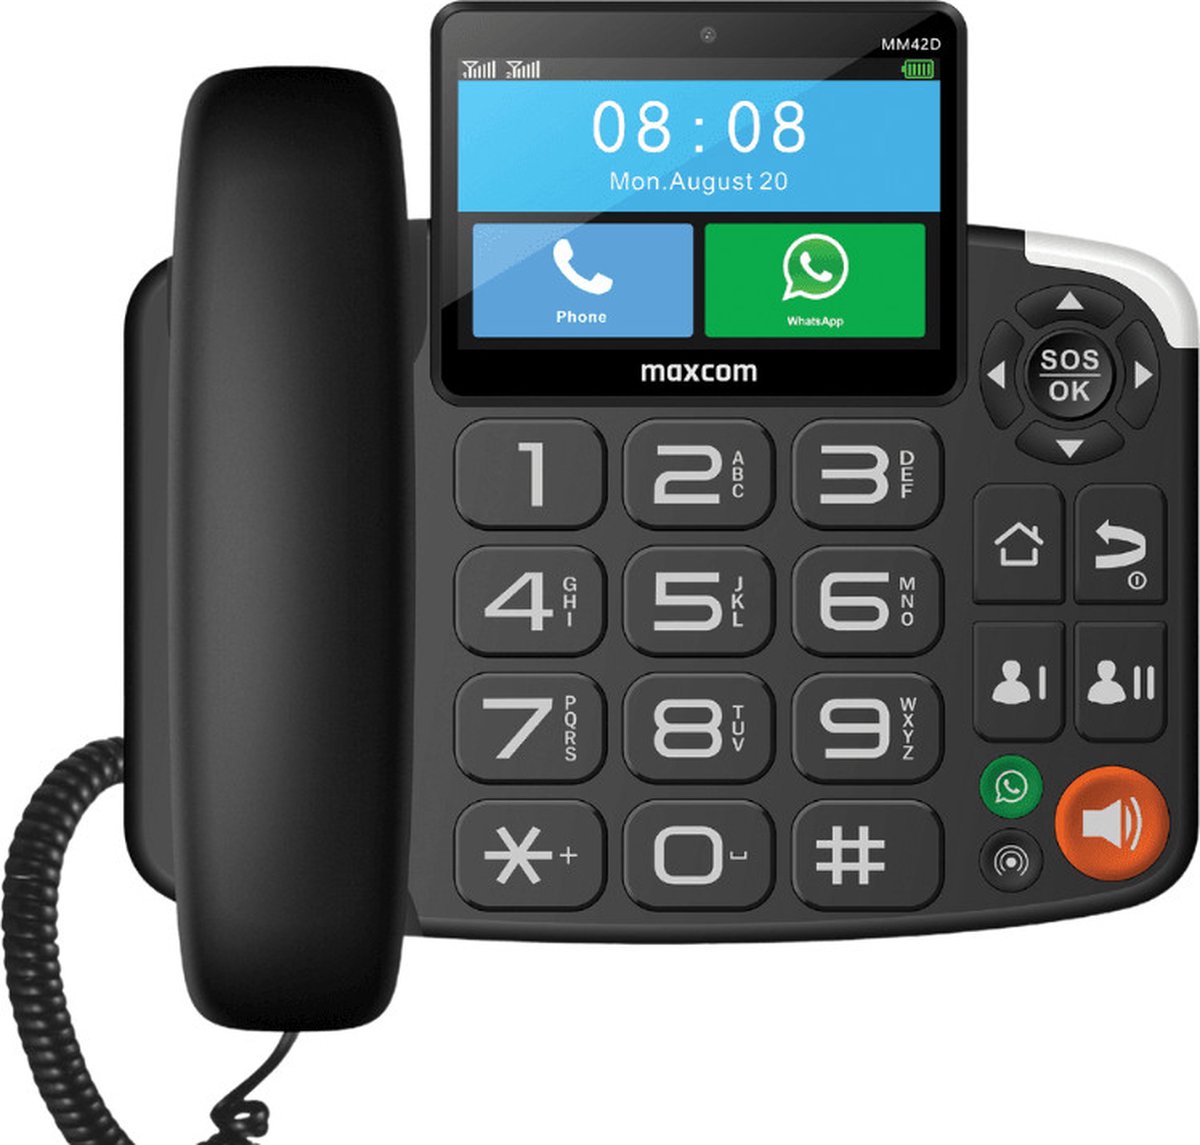 Maxcom MM42D - Vaste telefoon met simkaart, 4G, dual sim, grote knoppen, systeem Android, ingebouwde camera.